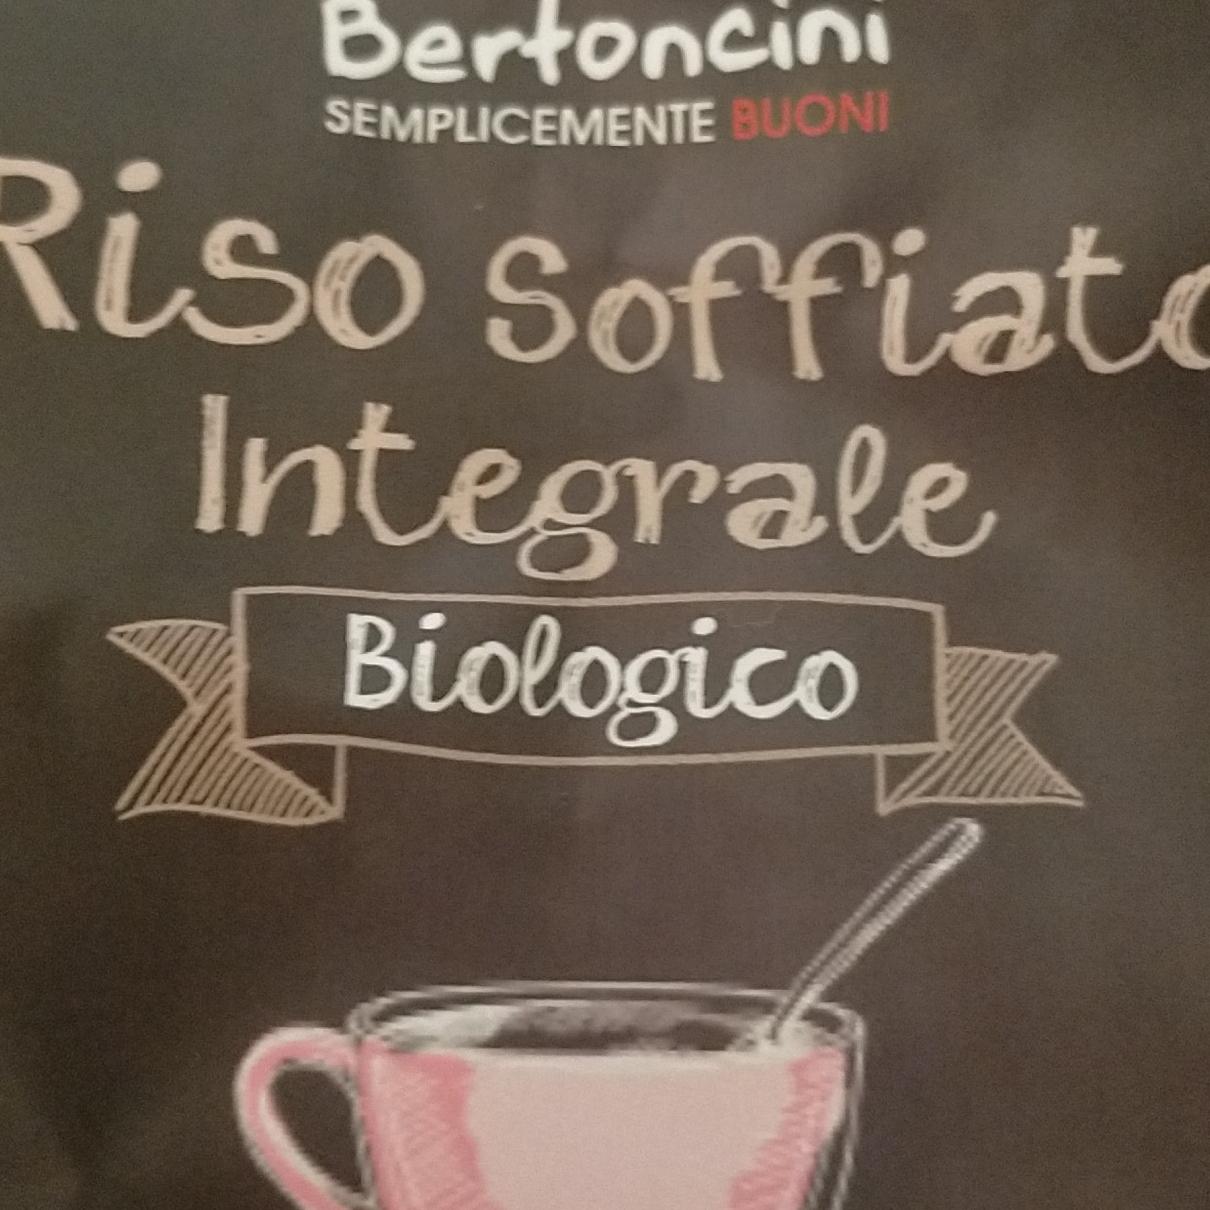 Fotografie - Bio riso soffiato integrale Bertoncini